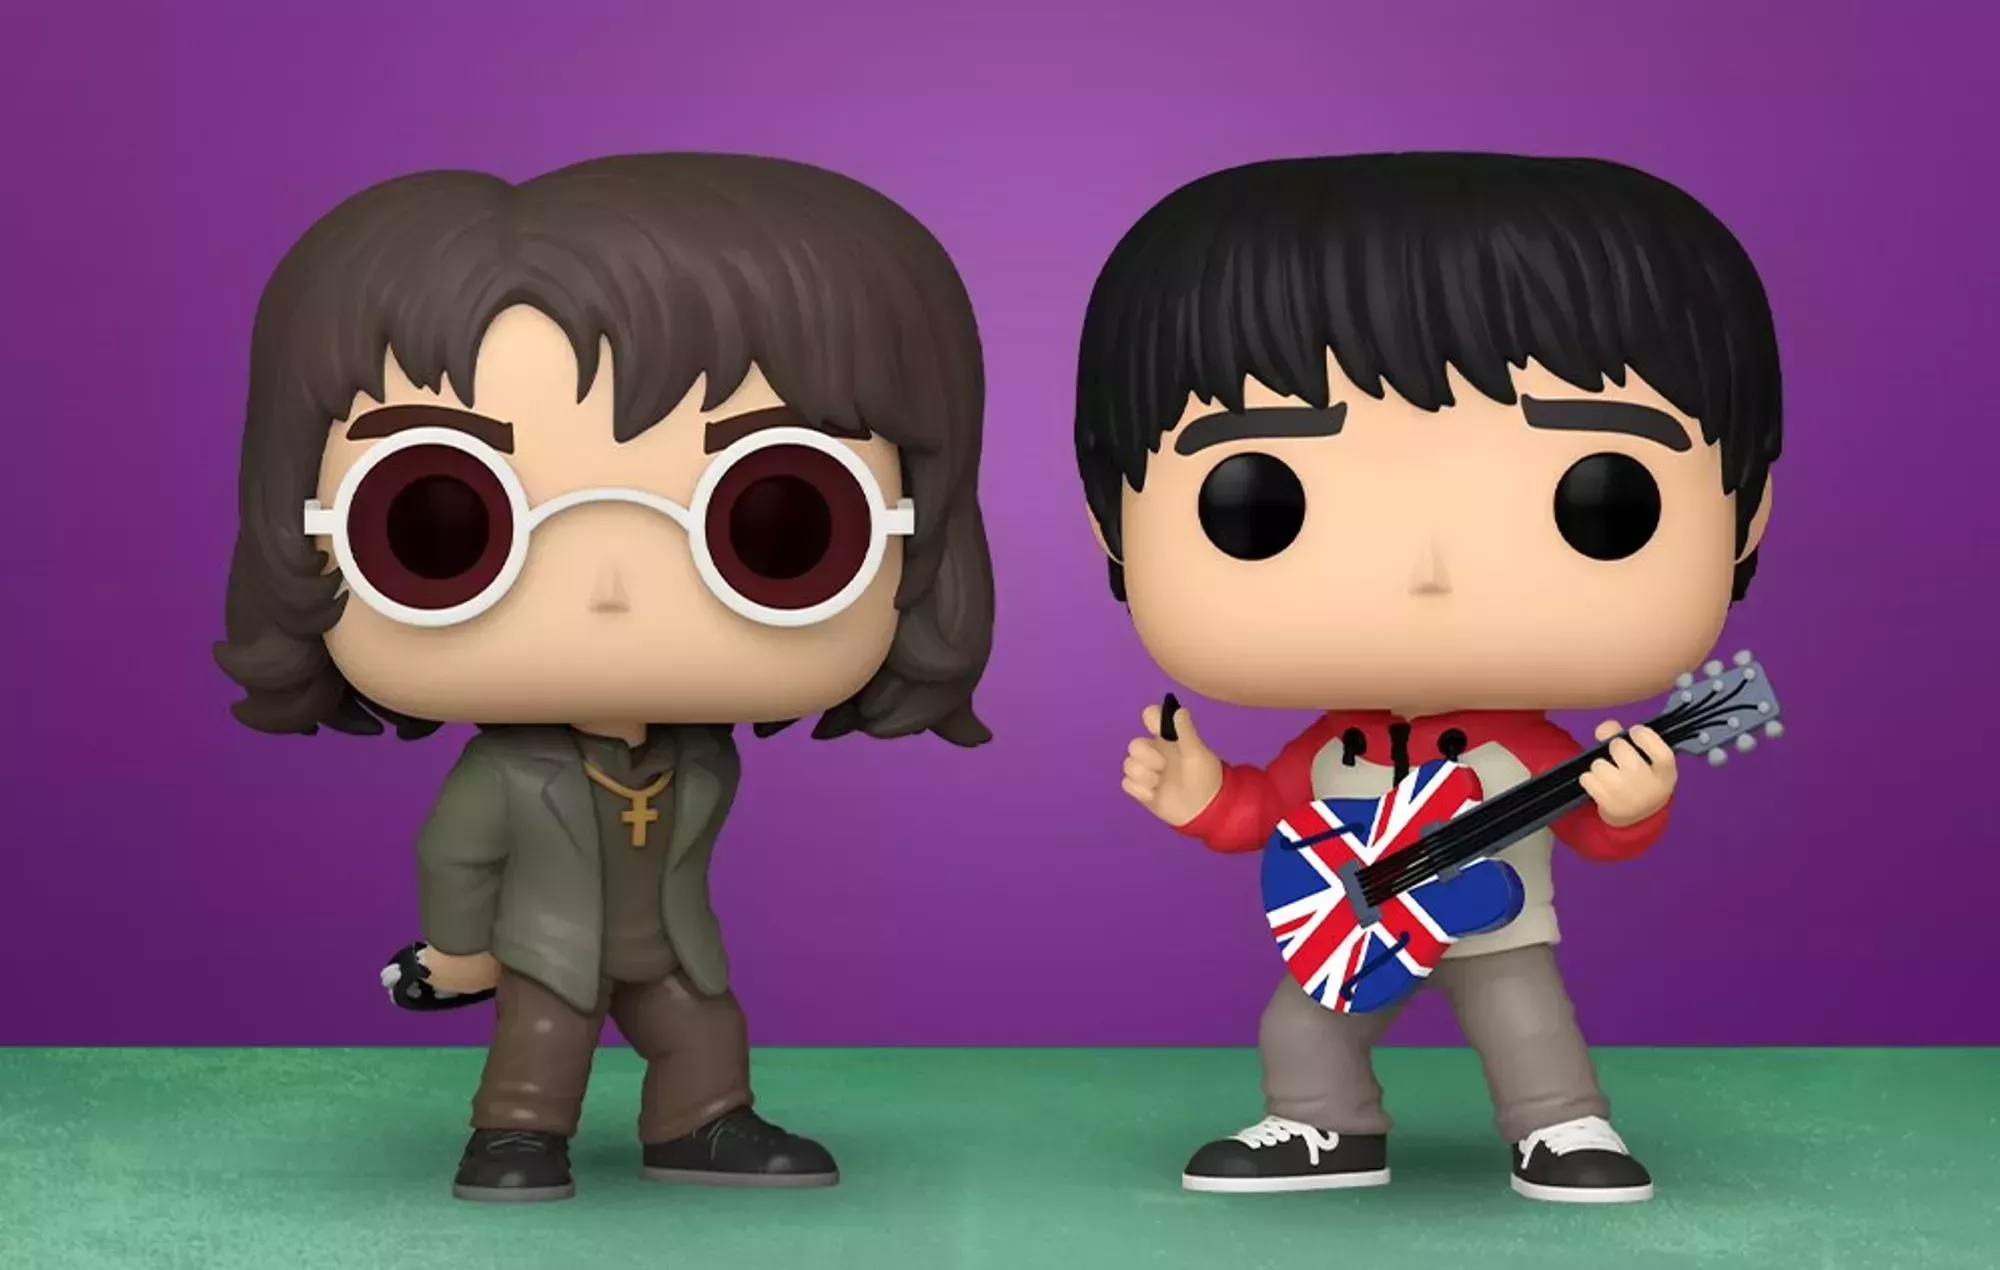 ¡Liam y Noel Gallagher se han convertido en figuras Funko POP!